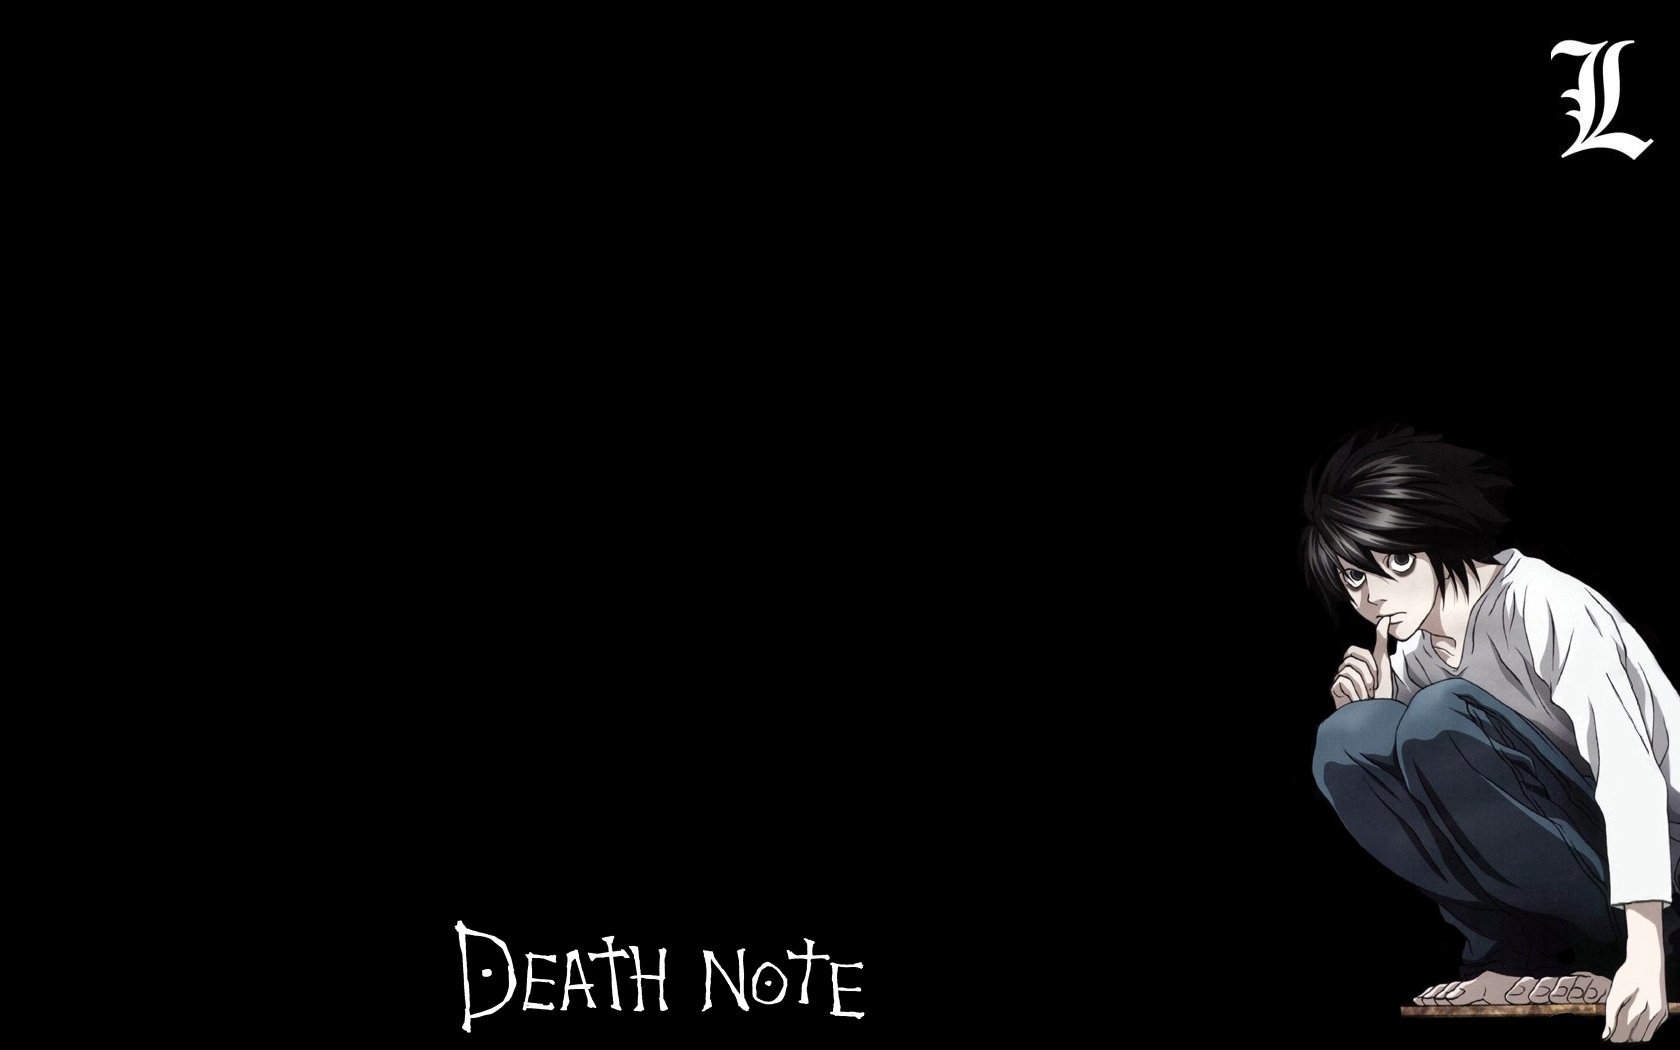 Лайт обои на телефон. L Death Note обои.